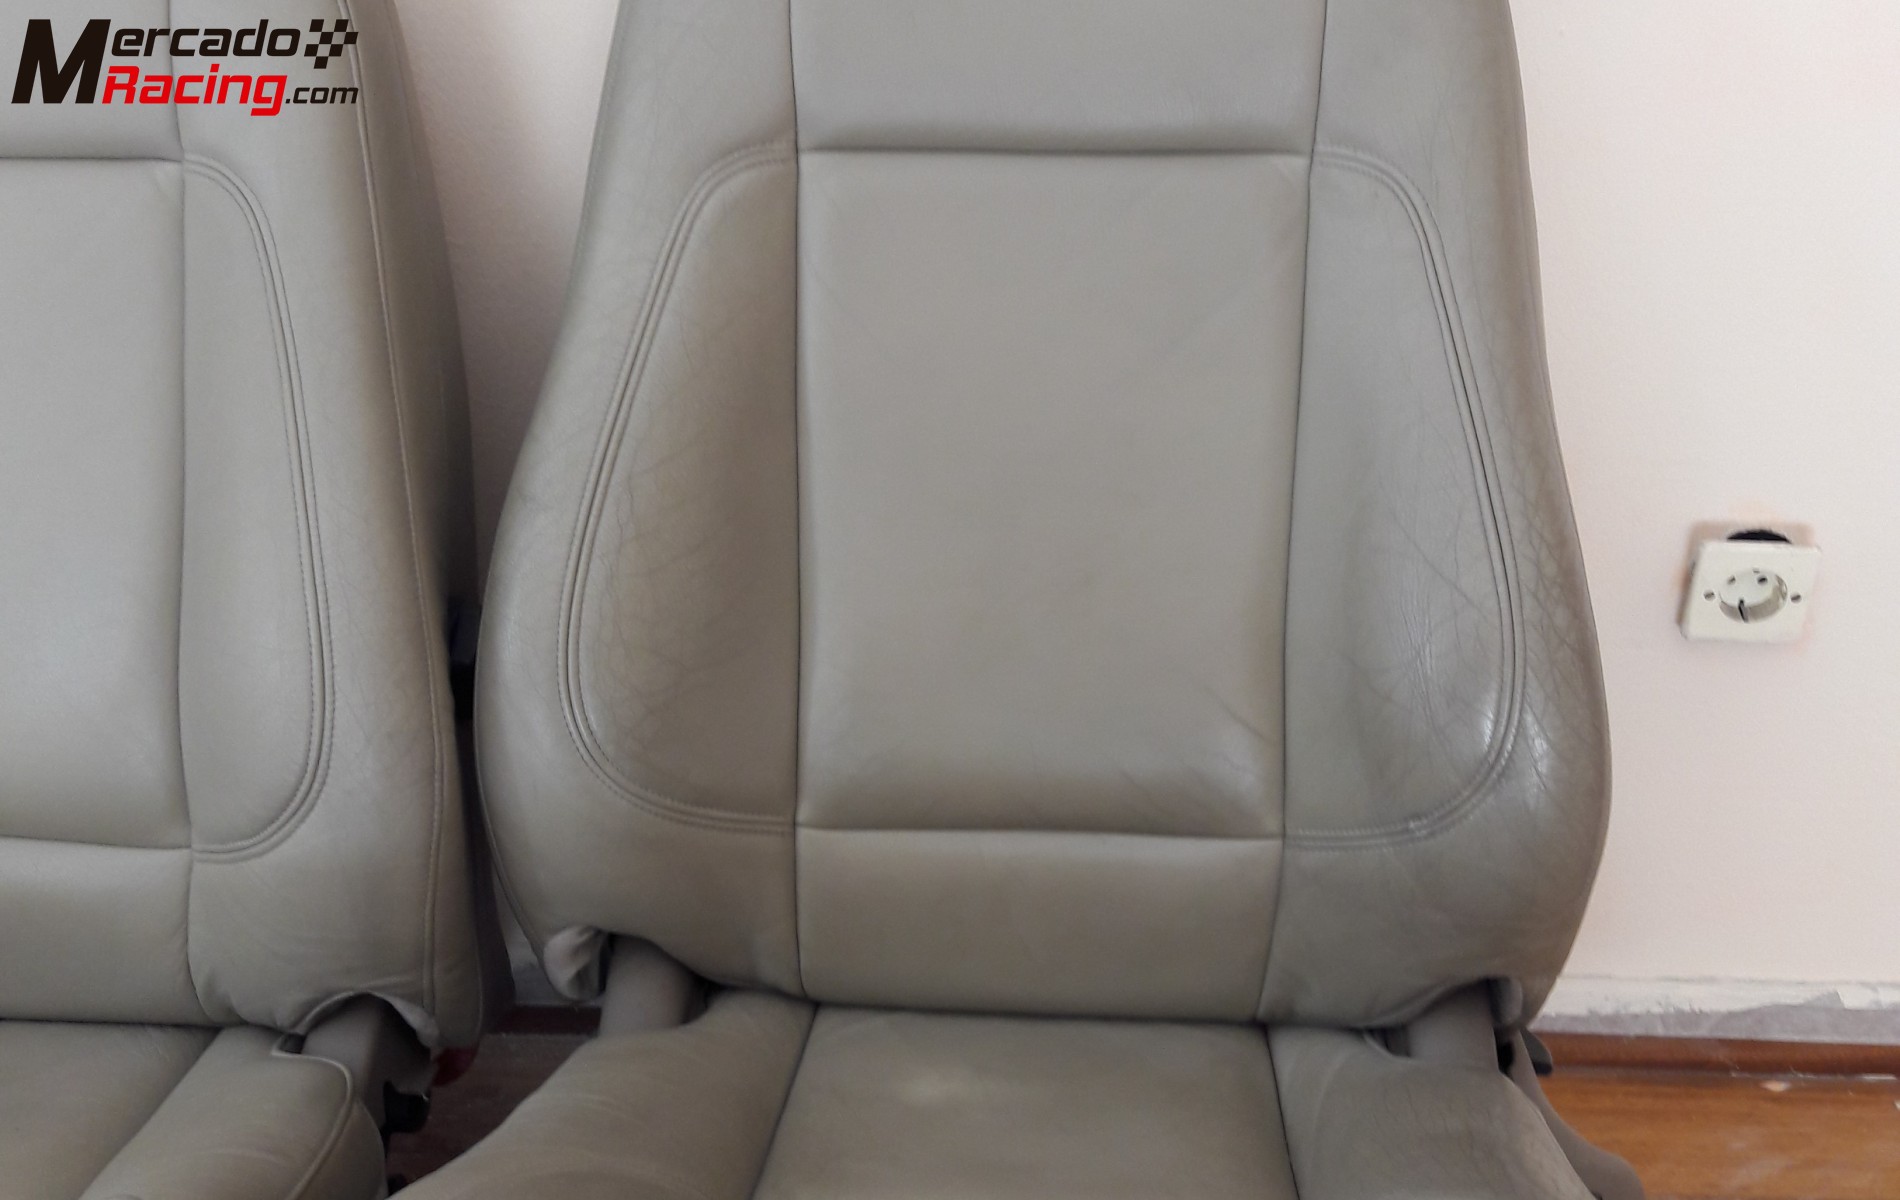 Vendo asientos volvo s-60 (delanteros) de piel